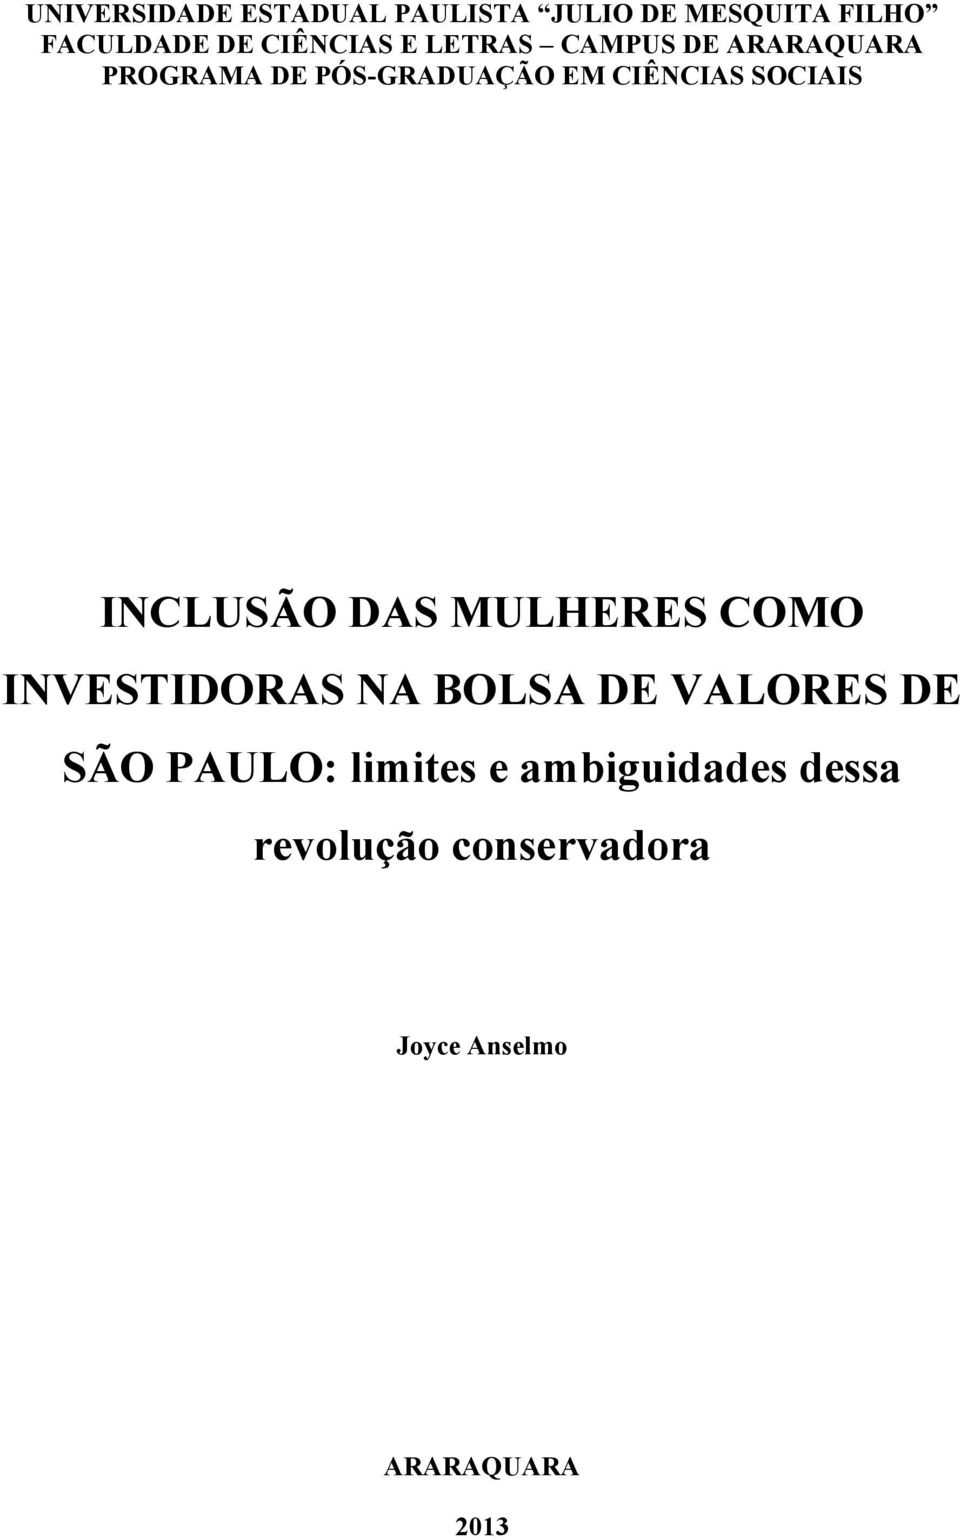 INCLUSÃO DAS MULHERES COMO INVESTIDORAS NA BOLSA DE VALORES DE SÃO PAULO: